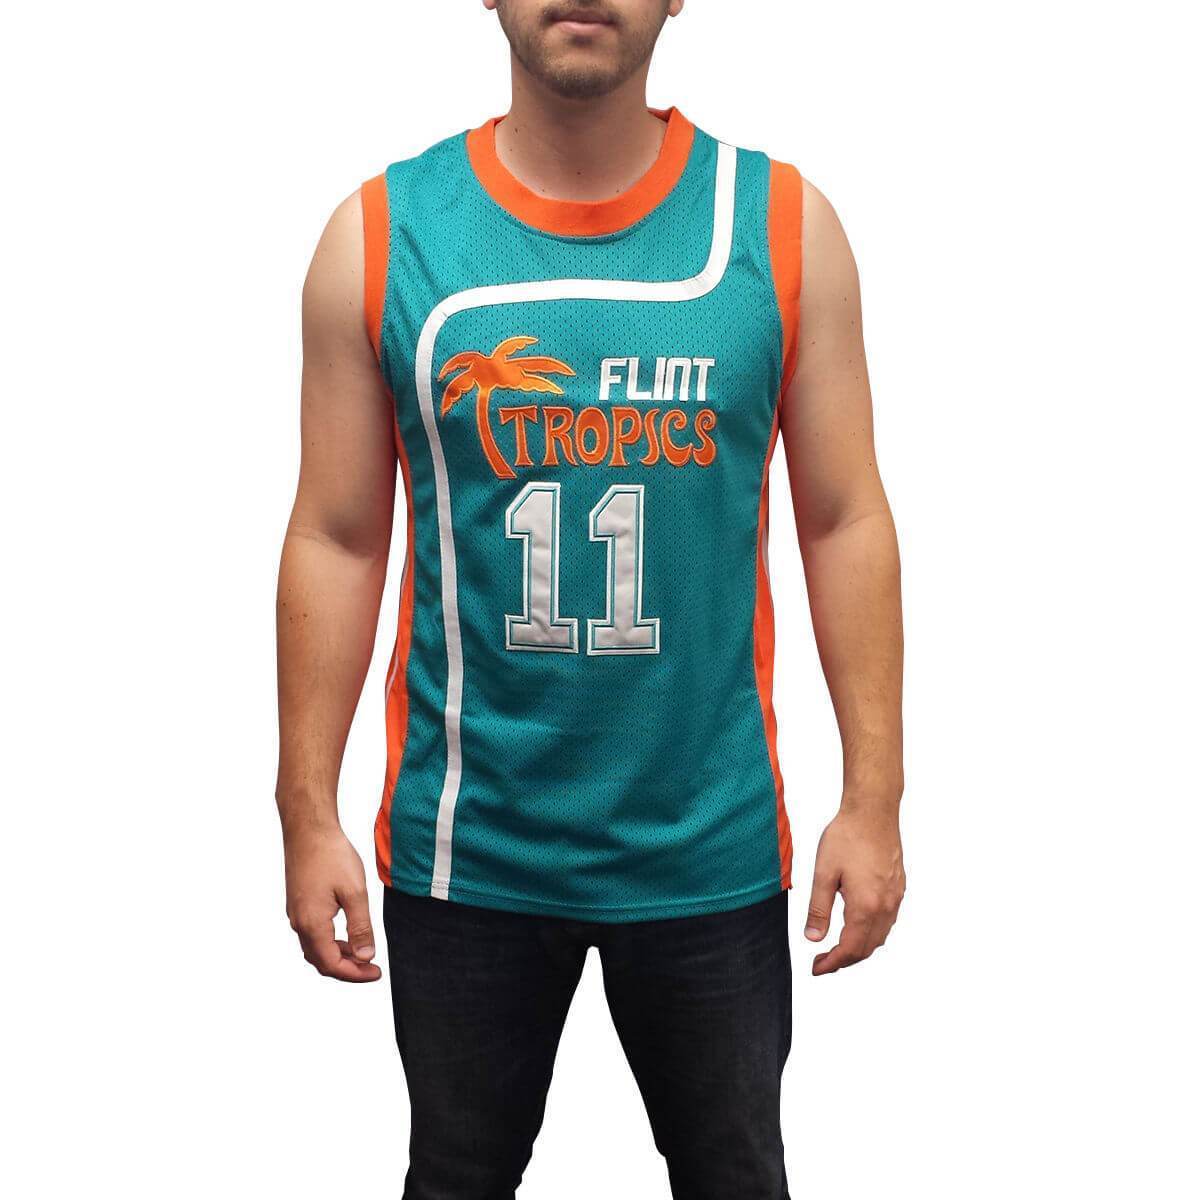 Flint Tropics Ed Monix Basketball Jersey #11 Stitched Green/White - Jersey Champs